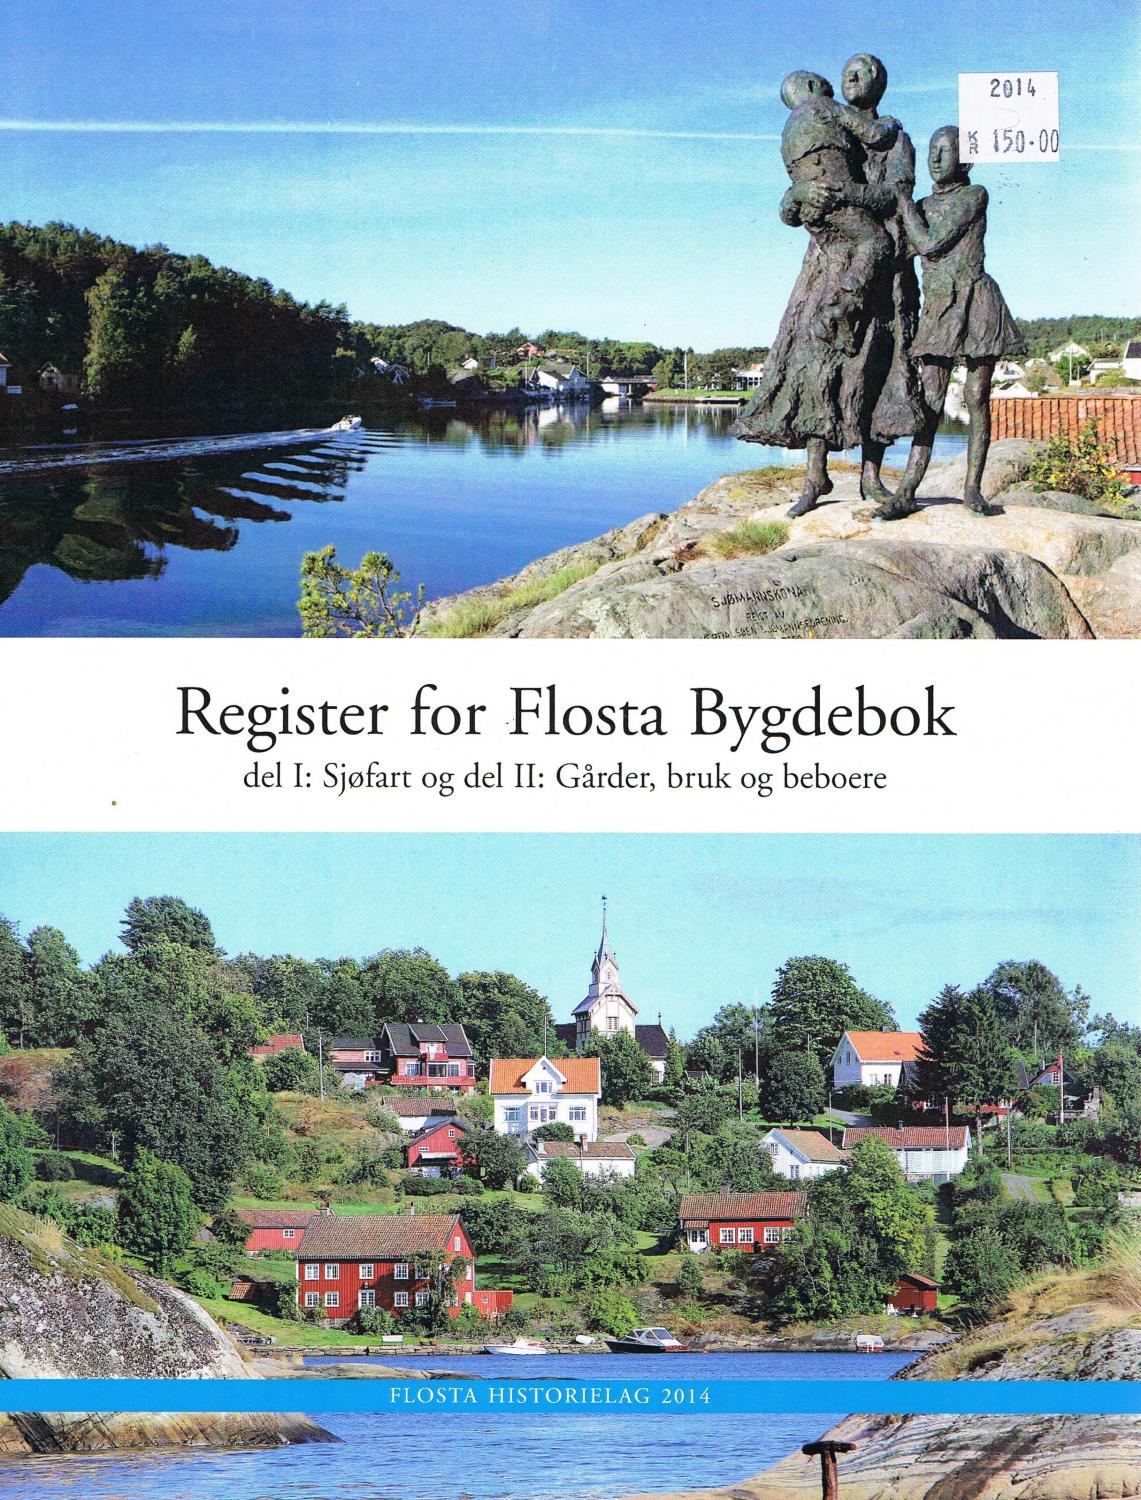 Register for Flosta Bygdebok del I og del II